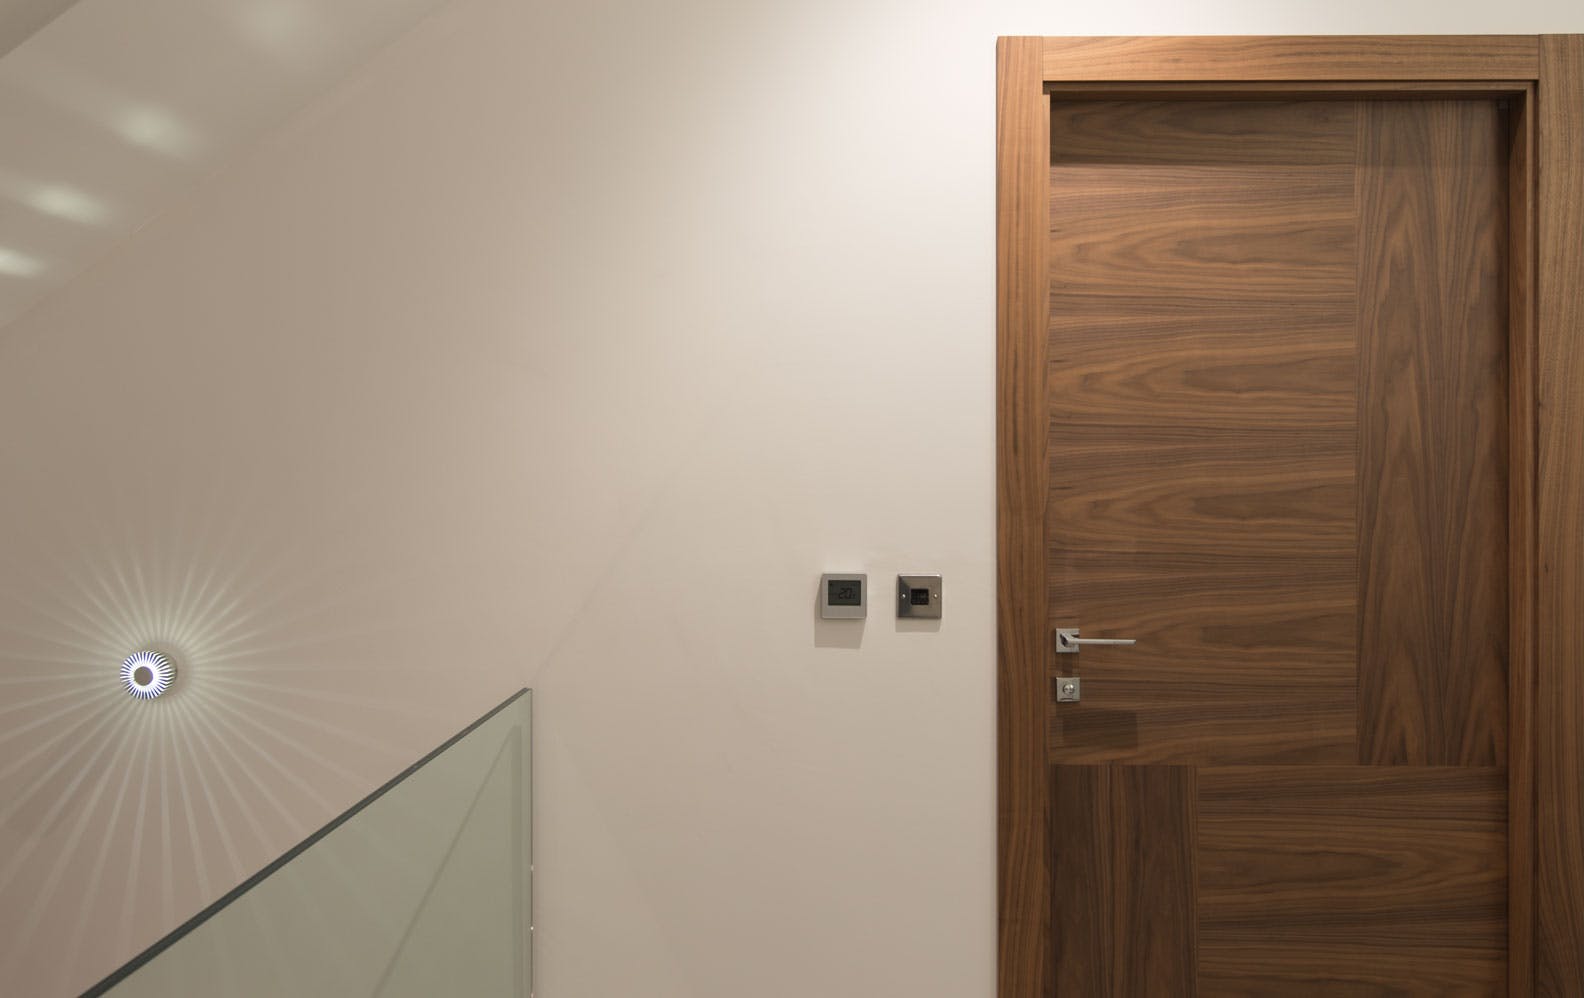 A made-to-measure interal door sets by Deuren - Vario 4 style, in a Walnut veneer, oriented in 4 ways.